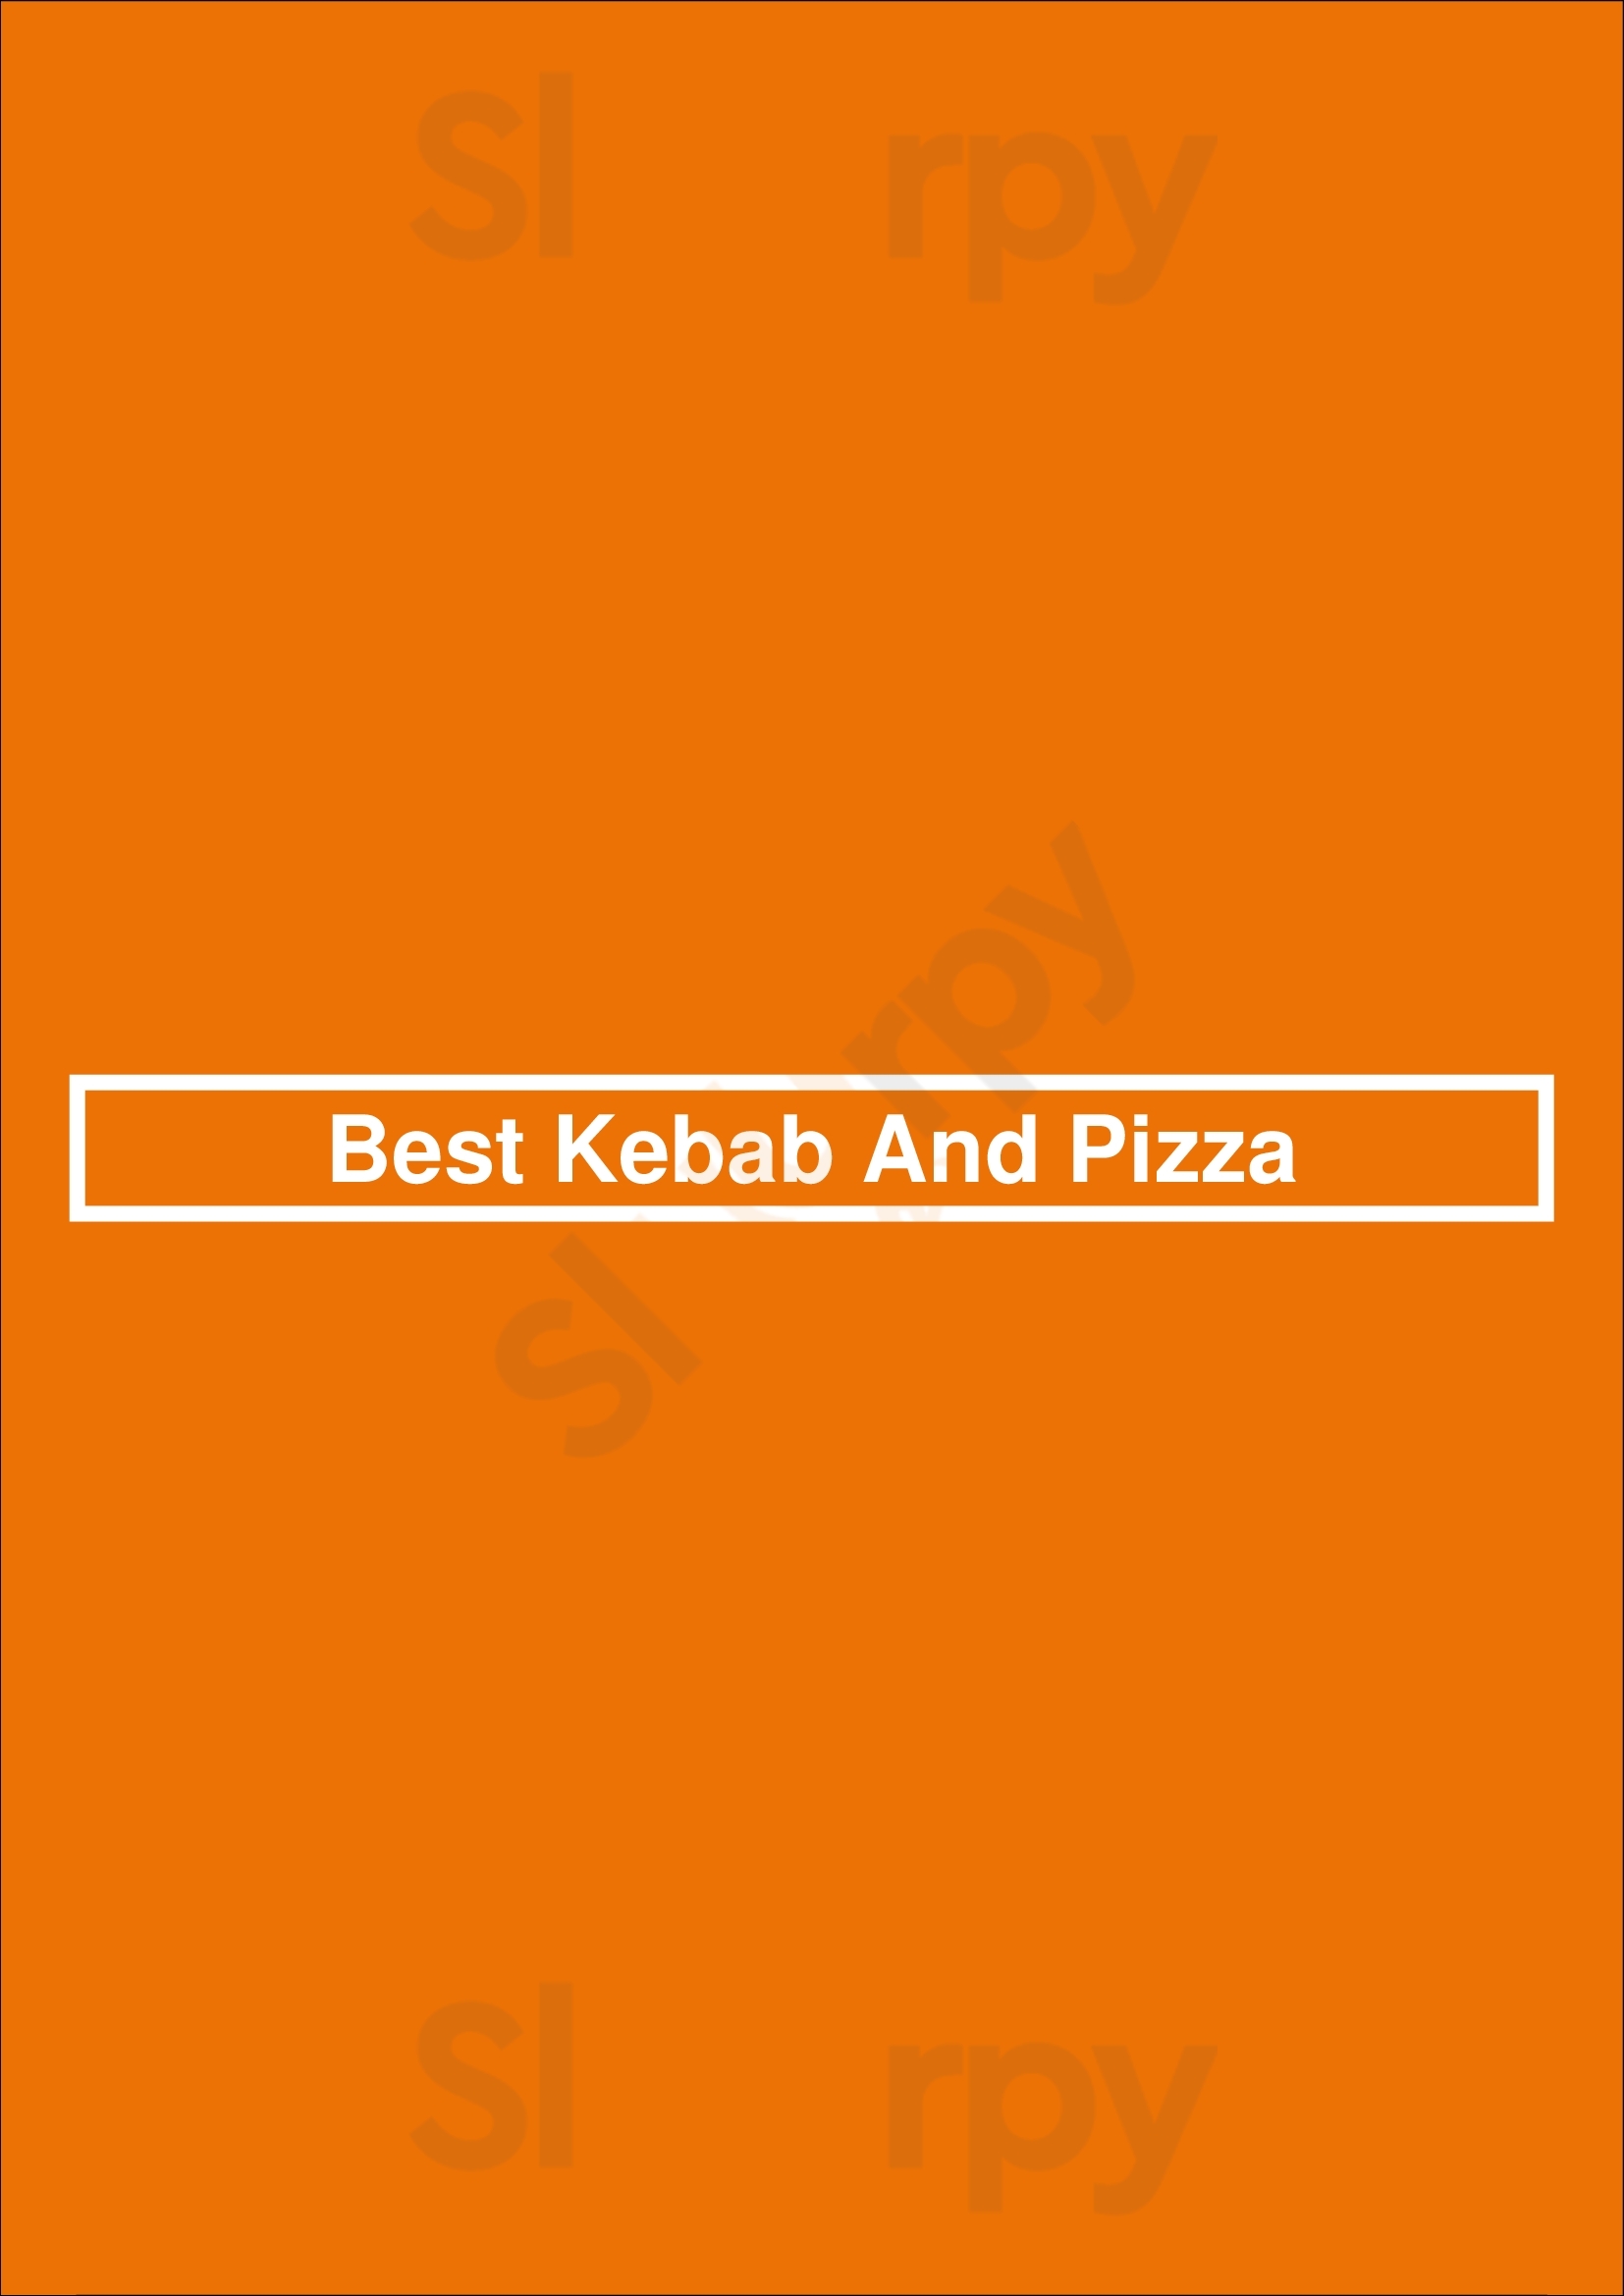 Best Kebab And Pizza Barnsley Menu - 1